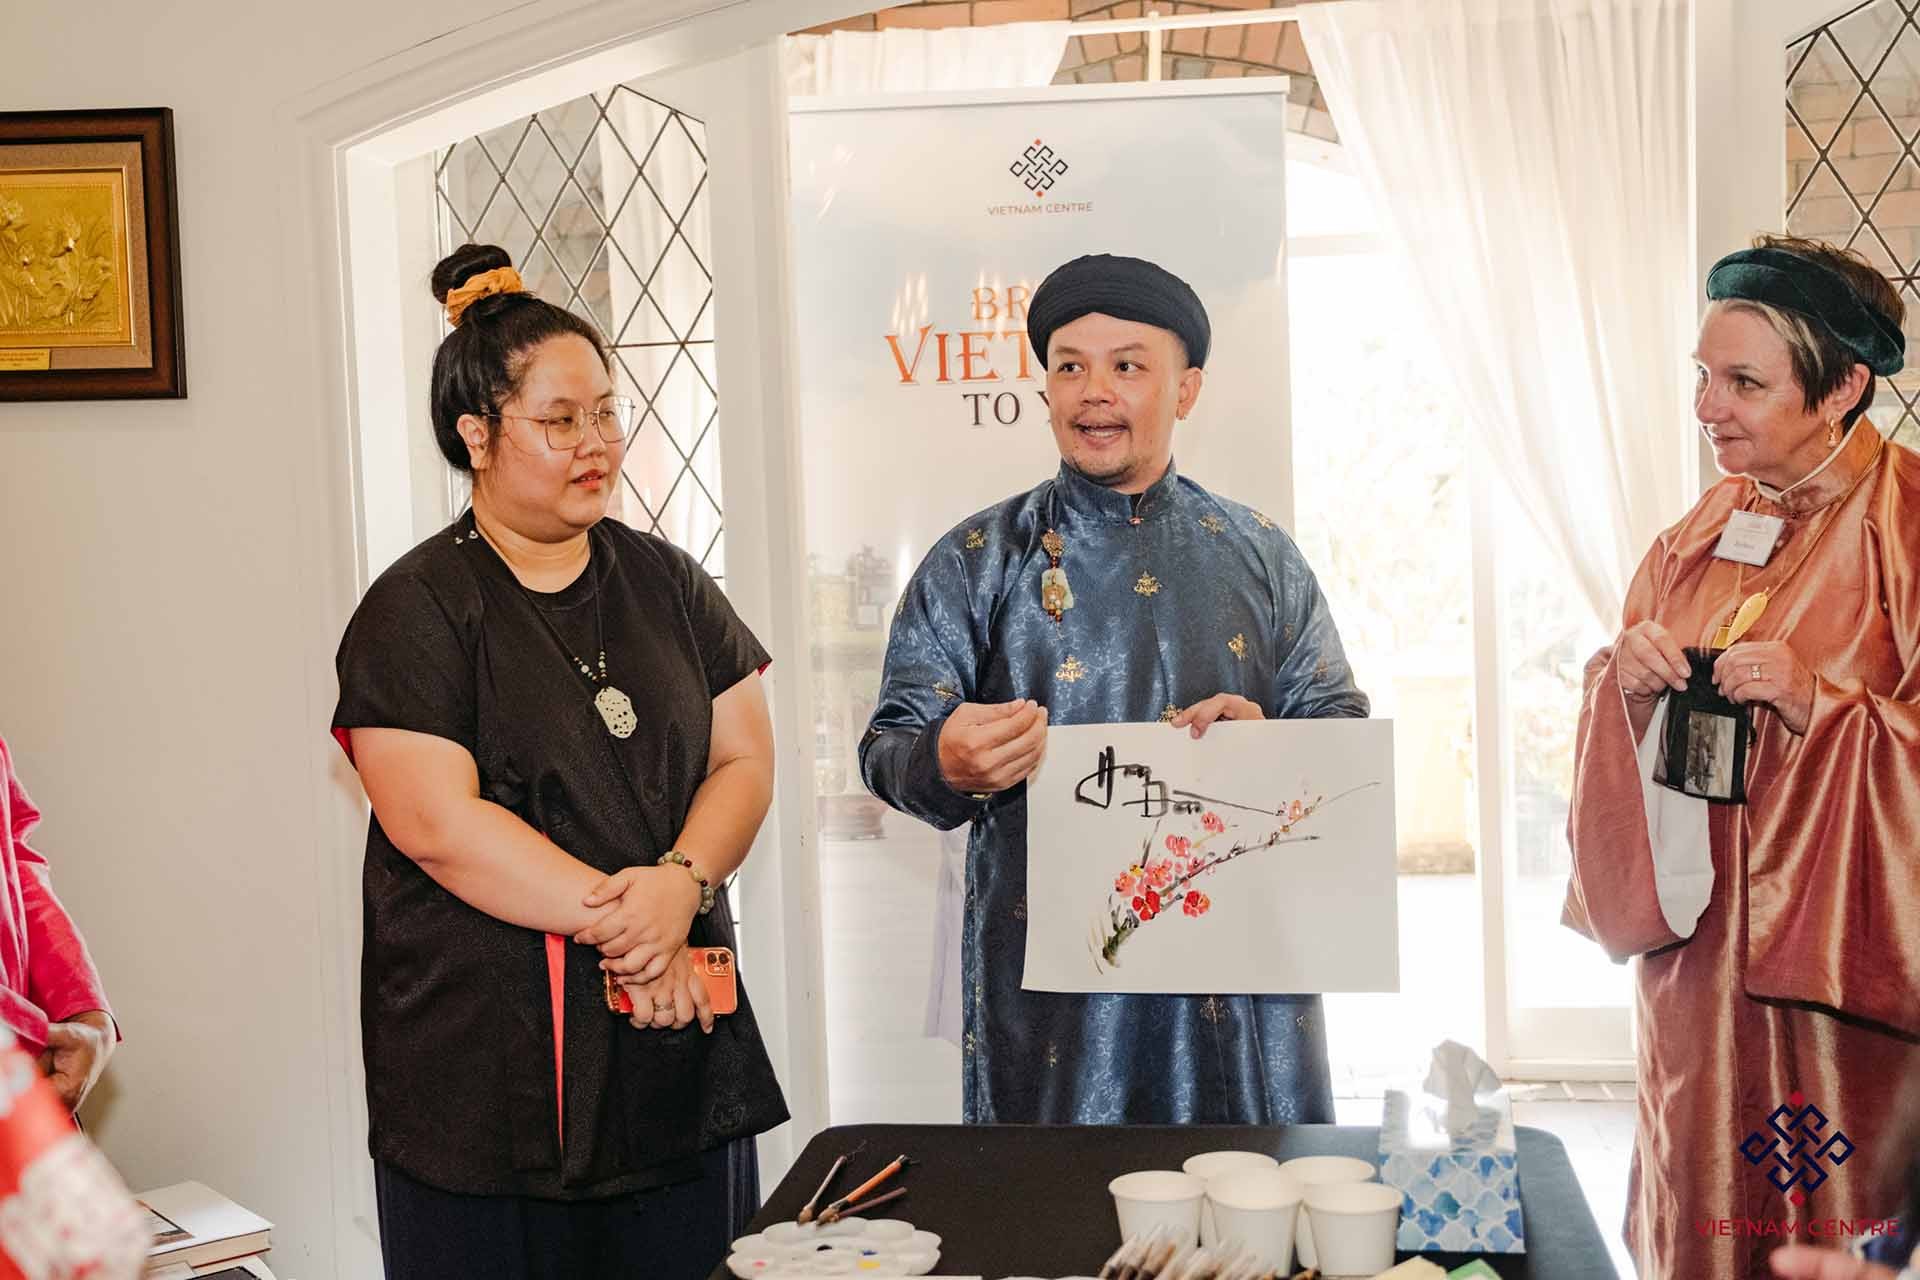 Giới thiệu văn hóa Việt Nam đến bạn bè quốc tế tại Sydney